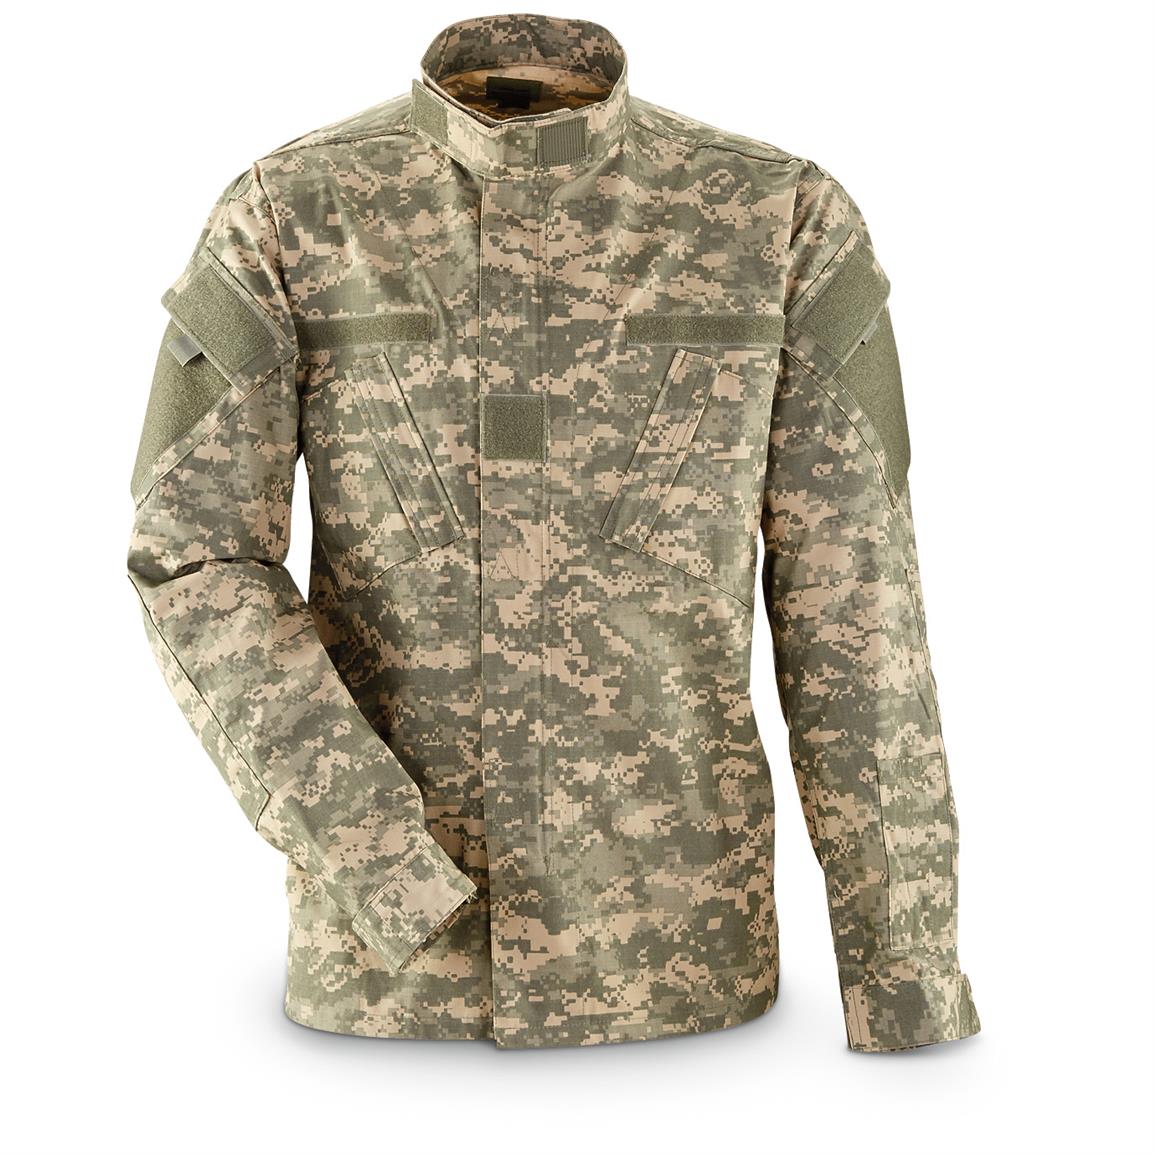 Tact Squad Men's Army Combat Uniform Shirt - 669039, Tactical Clothing ...